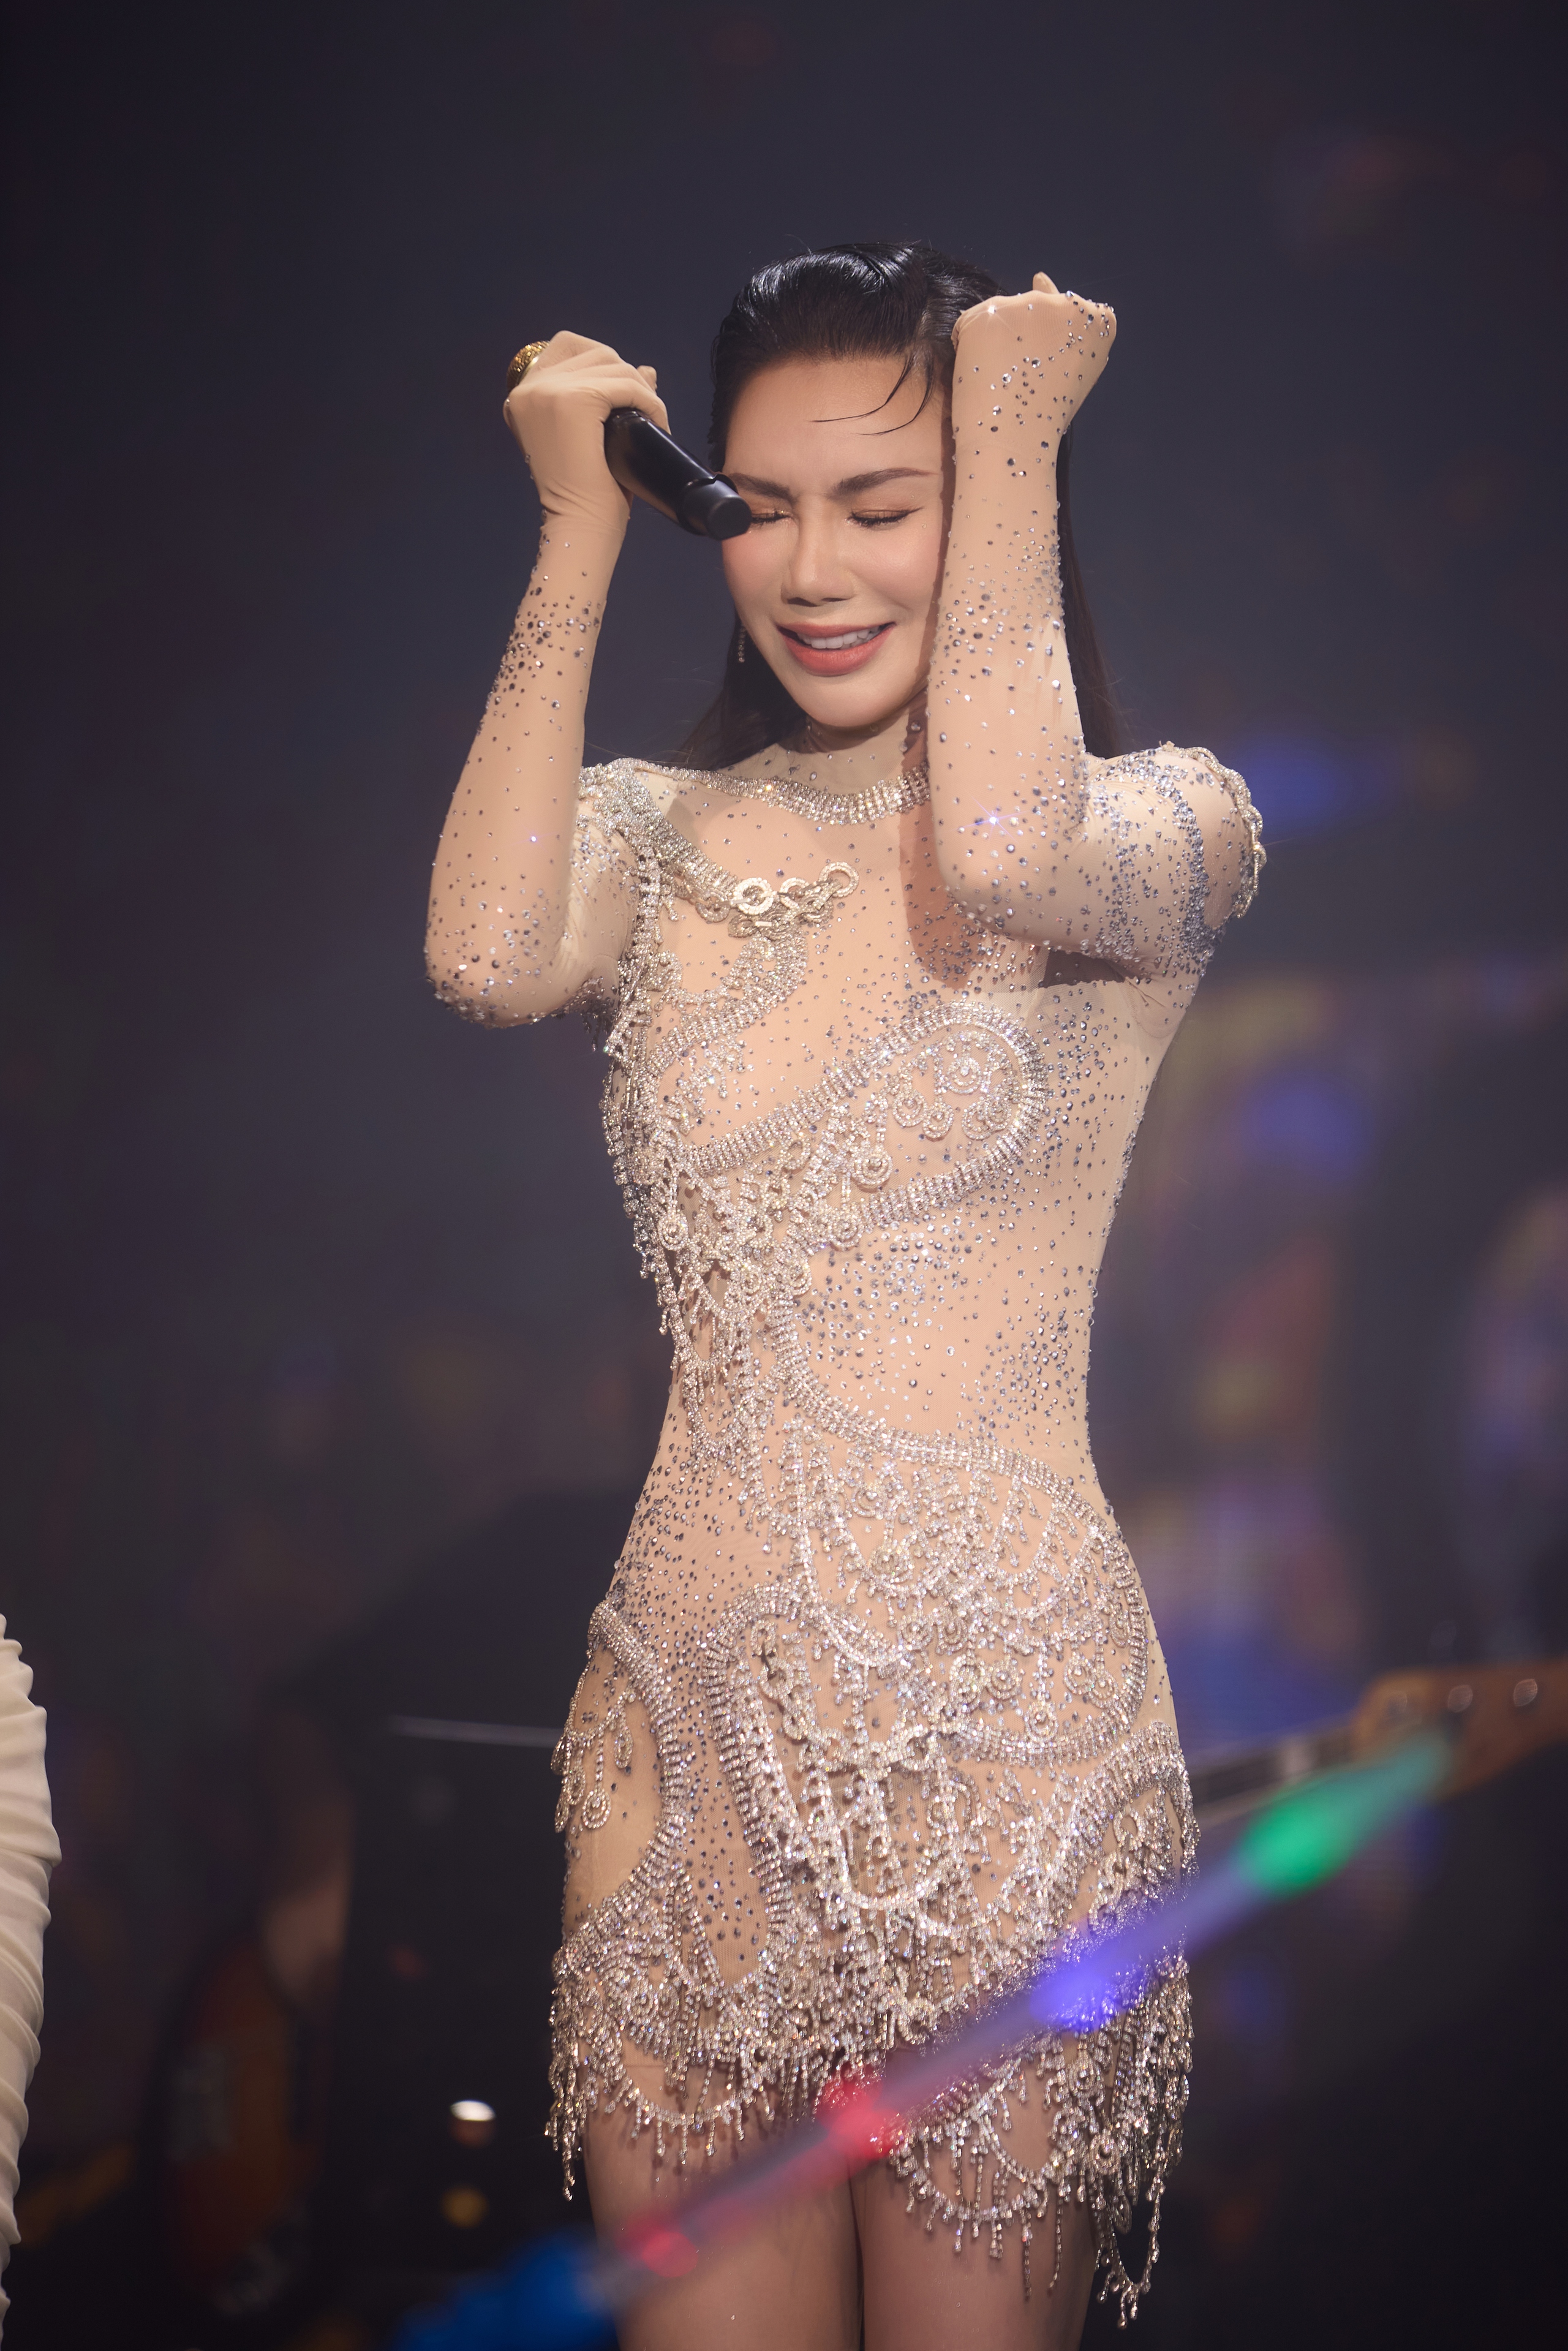 Hồ Quỳnh Hương bật khóc và bản hát live  có "1-0-2" ca khúc "Cứ để cho em"- Ảnh 4.